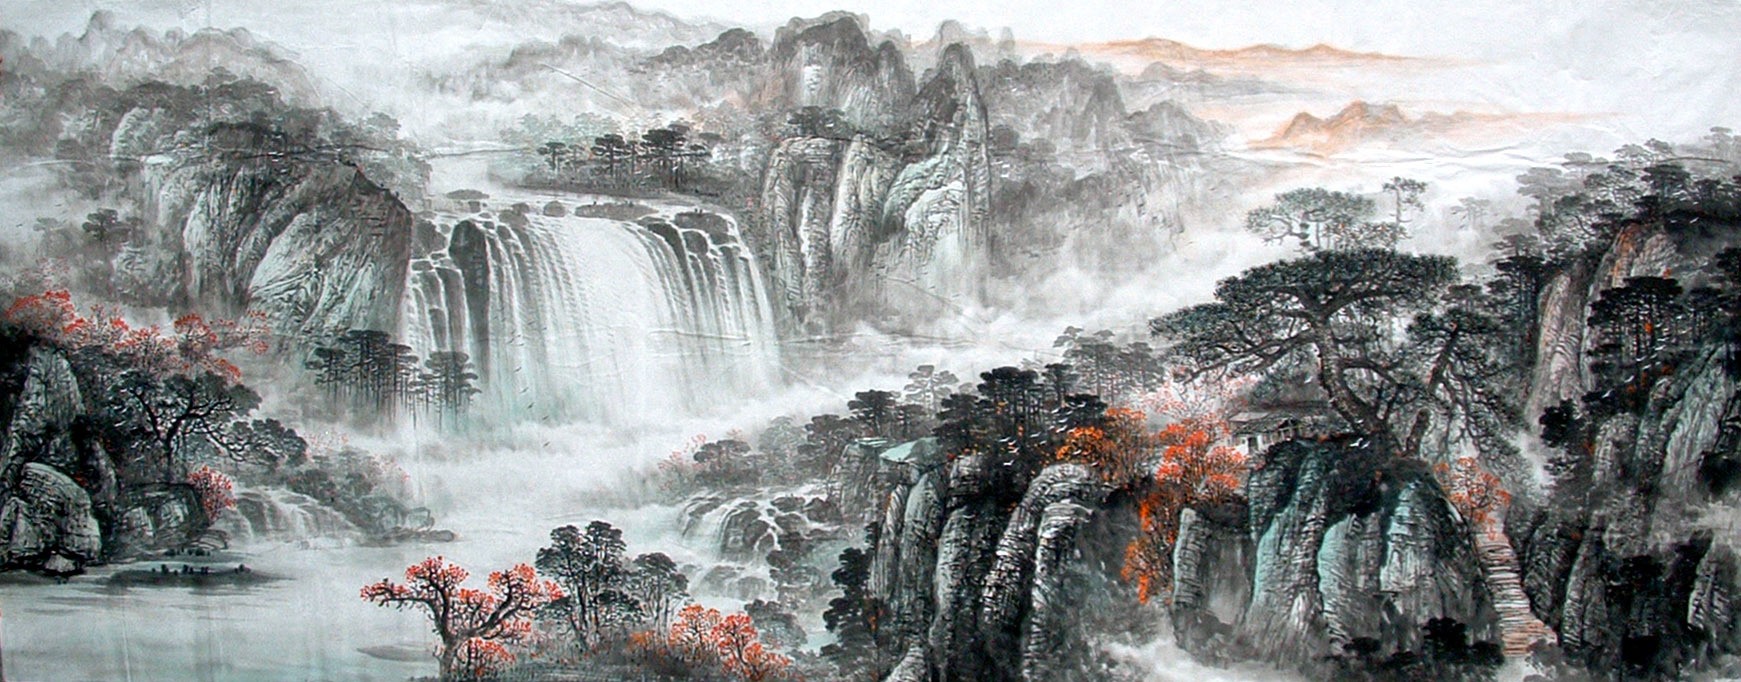 Chinese Landscape Painting - CNAG014341